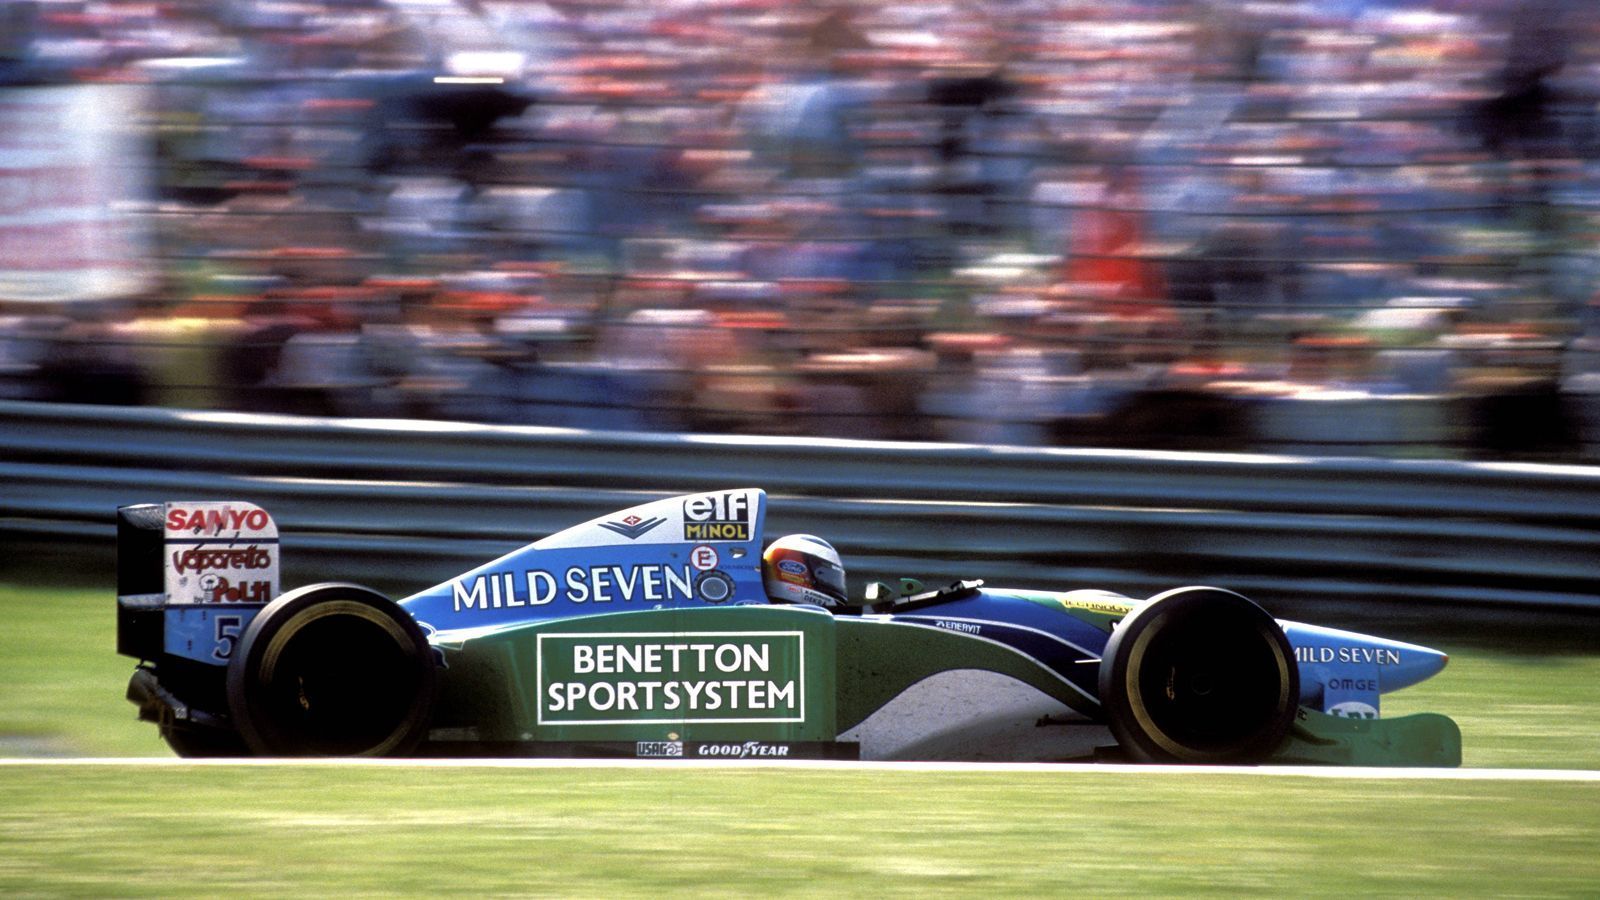 
                <strong>1. Saisonlauf: Brasilien-GP in Sao Paolo</strong><br>
                Die Formel-1-Saison 1994 nimmt seinen Auftakt in Brasilien - der Heimat von Ayrton Senna. Zu jenem Zeitpunkt ahnt keiner, welch dramatische Ereignisse in jener Saison ihren Lauf nehmen. Titelkandidaten sind Senna im Williams-Renault und Michael Schumacher im Benetton. Der Deutsche siegt dann auch gleich zum Auftakt, um mit einer Runde Vorsprung ein Ausrufezeichen zu setzen.
              